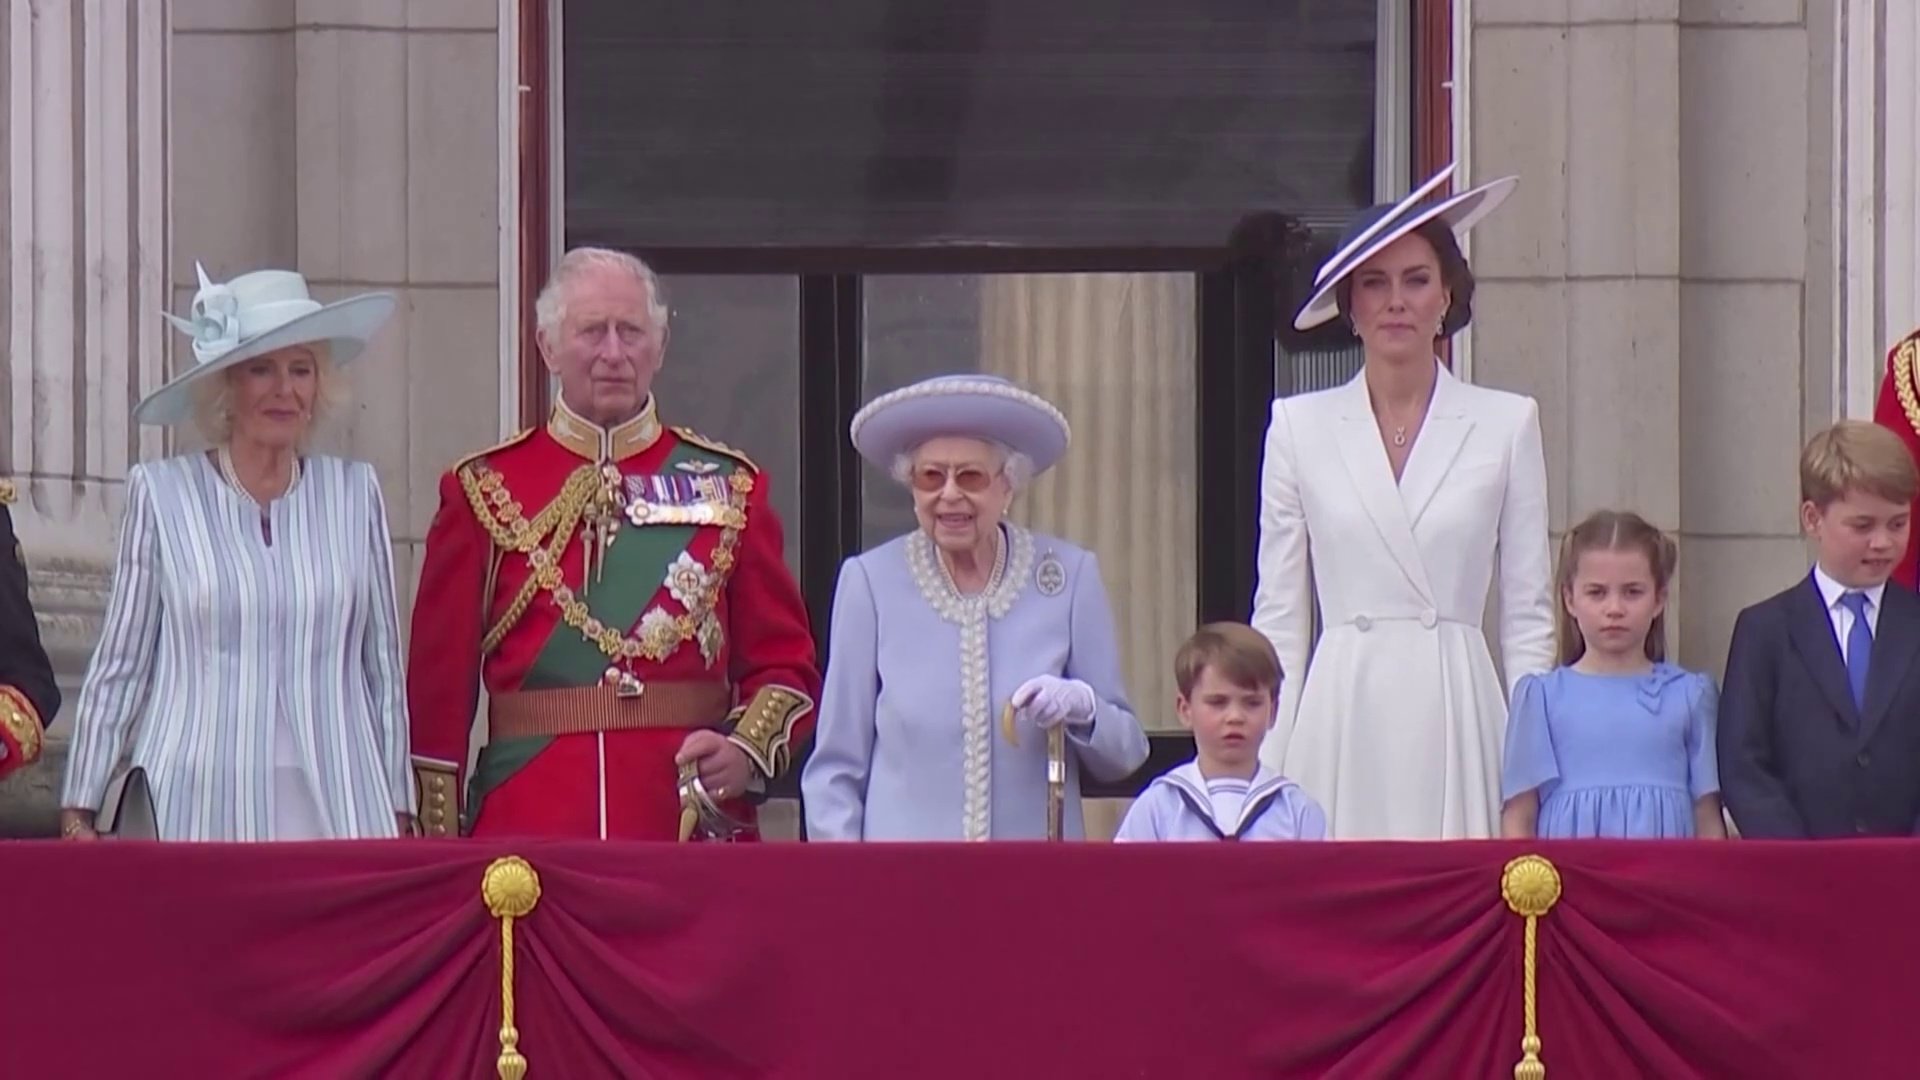 「プラチナ・ジュビリー」 96歳の英エリザベス女王、在位70年を祝う行事でバルコニーに姿